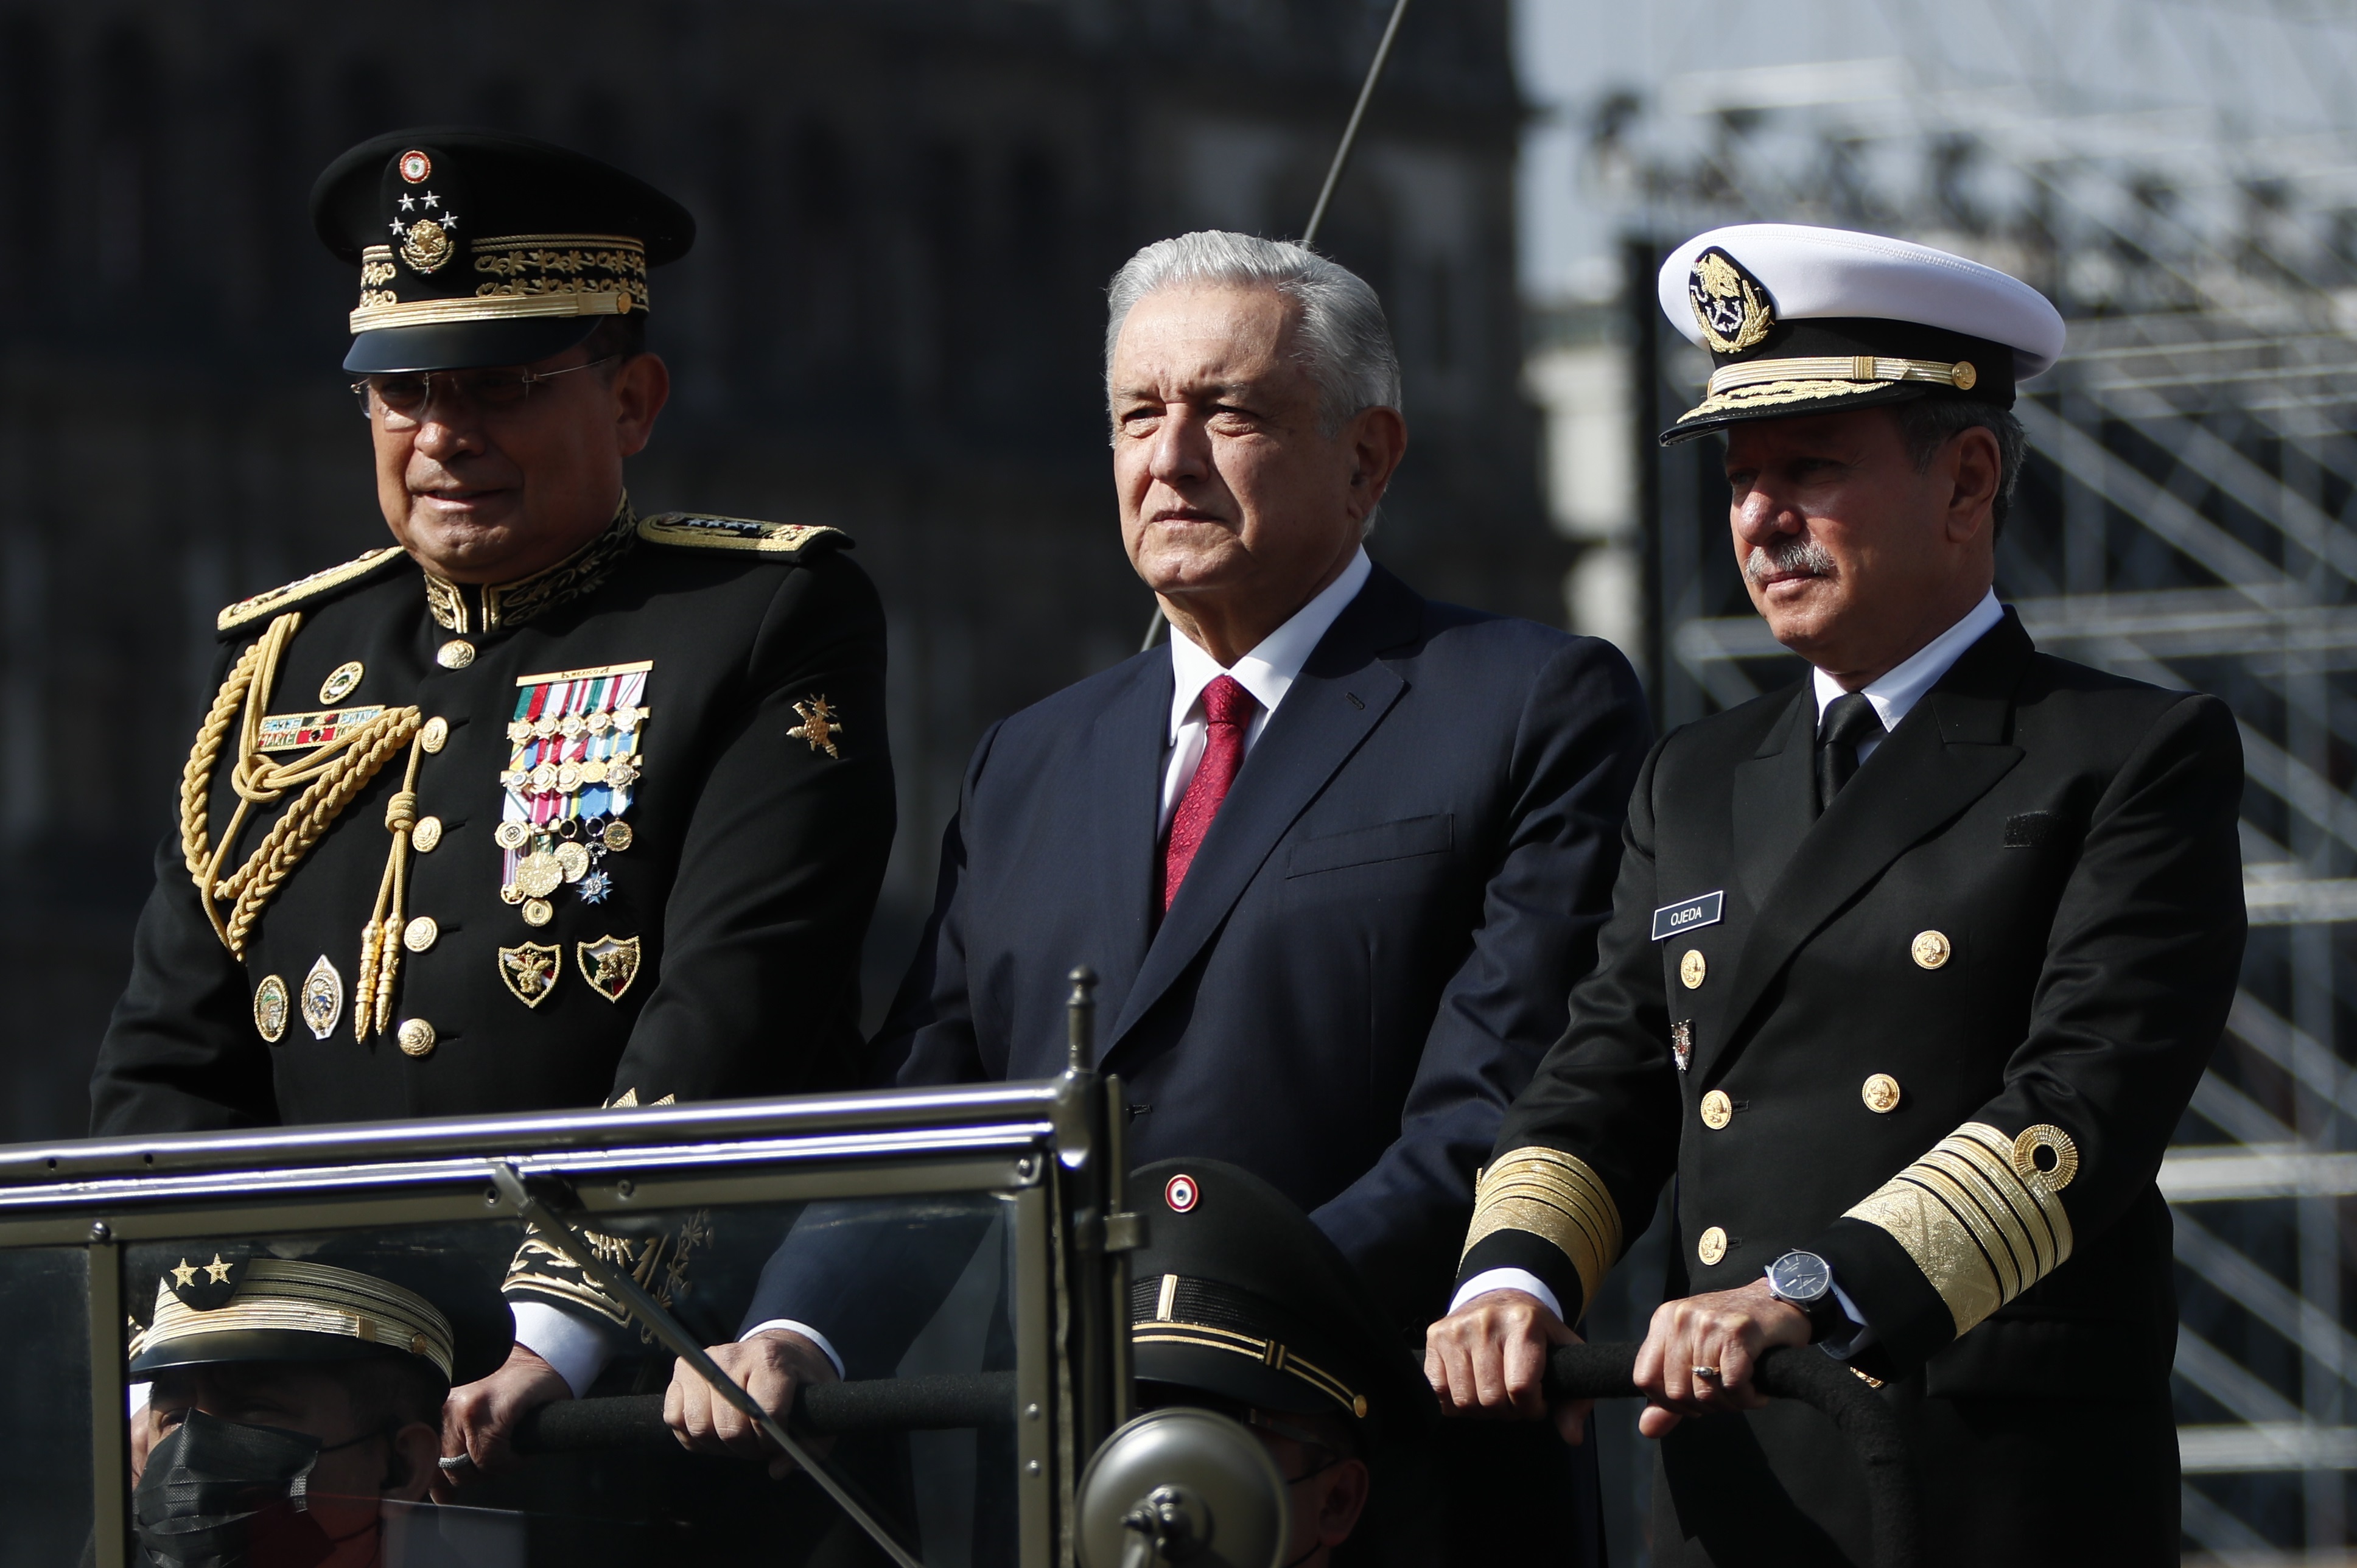 El presidente Andrés Manuel López Obrador (AMLO) admitió que buscará que Ejército y Marina realicen labores permanentes de seguridad pública para abatir la inseguridad. (Foto: EFE/ José Méndez/ Archivo)
